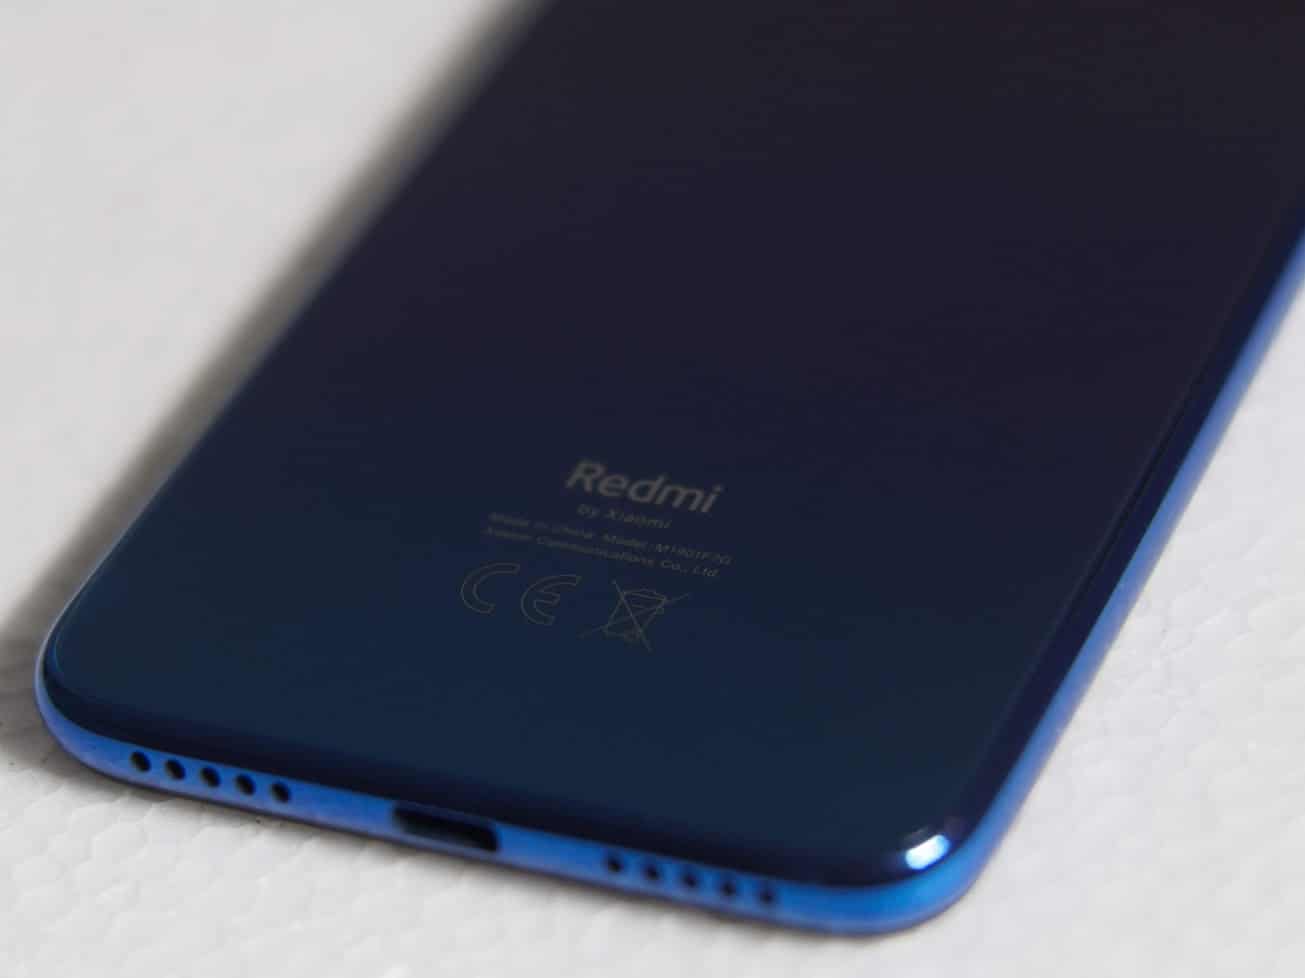 รีวิว Redmi Note 7 สมาร์ทโฟนสุดคุ้มค่า เริ่มต้นในราคาที่พอเพียง 163